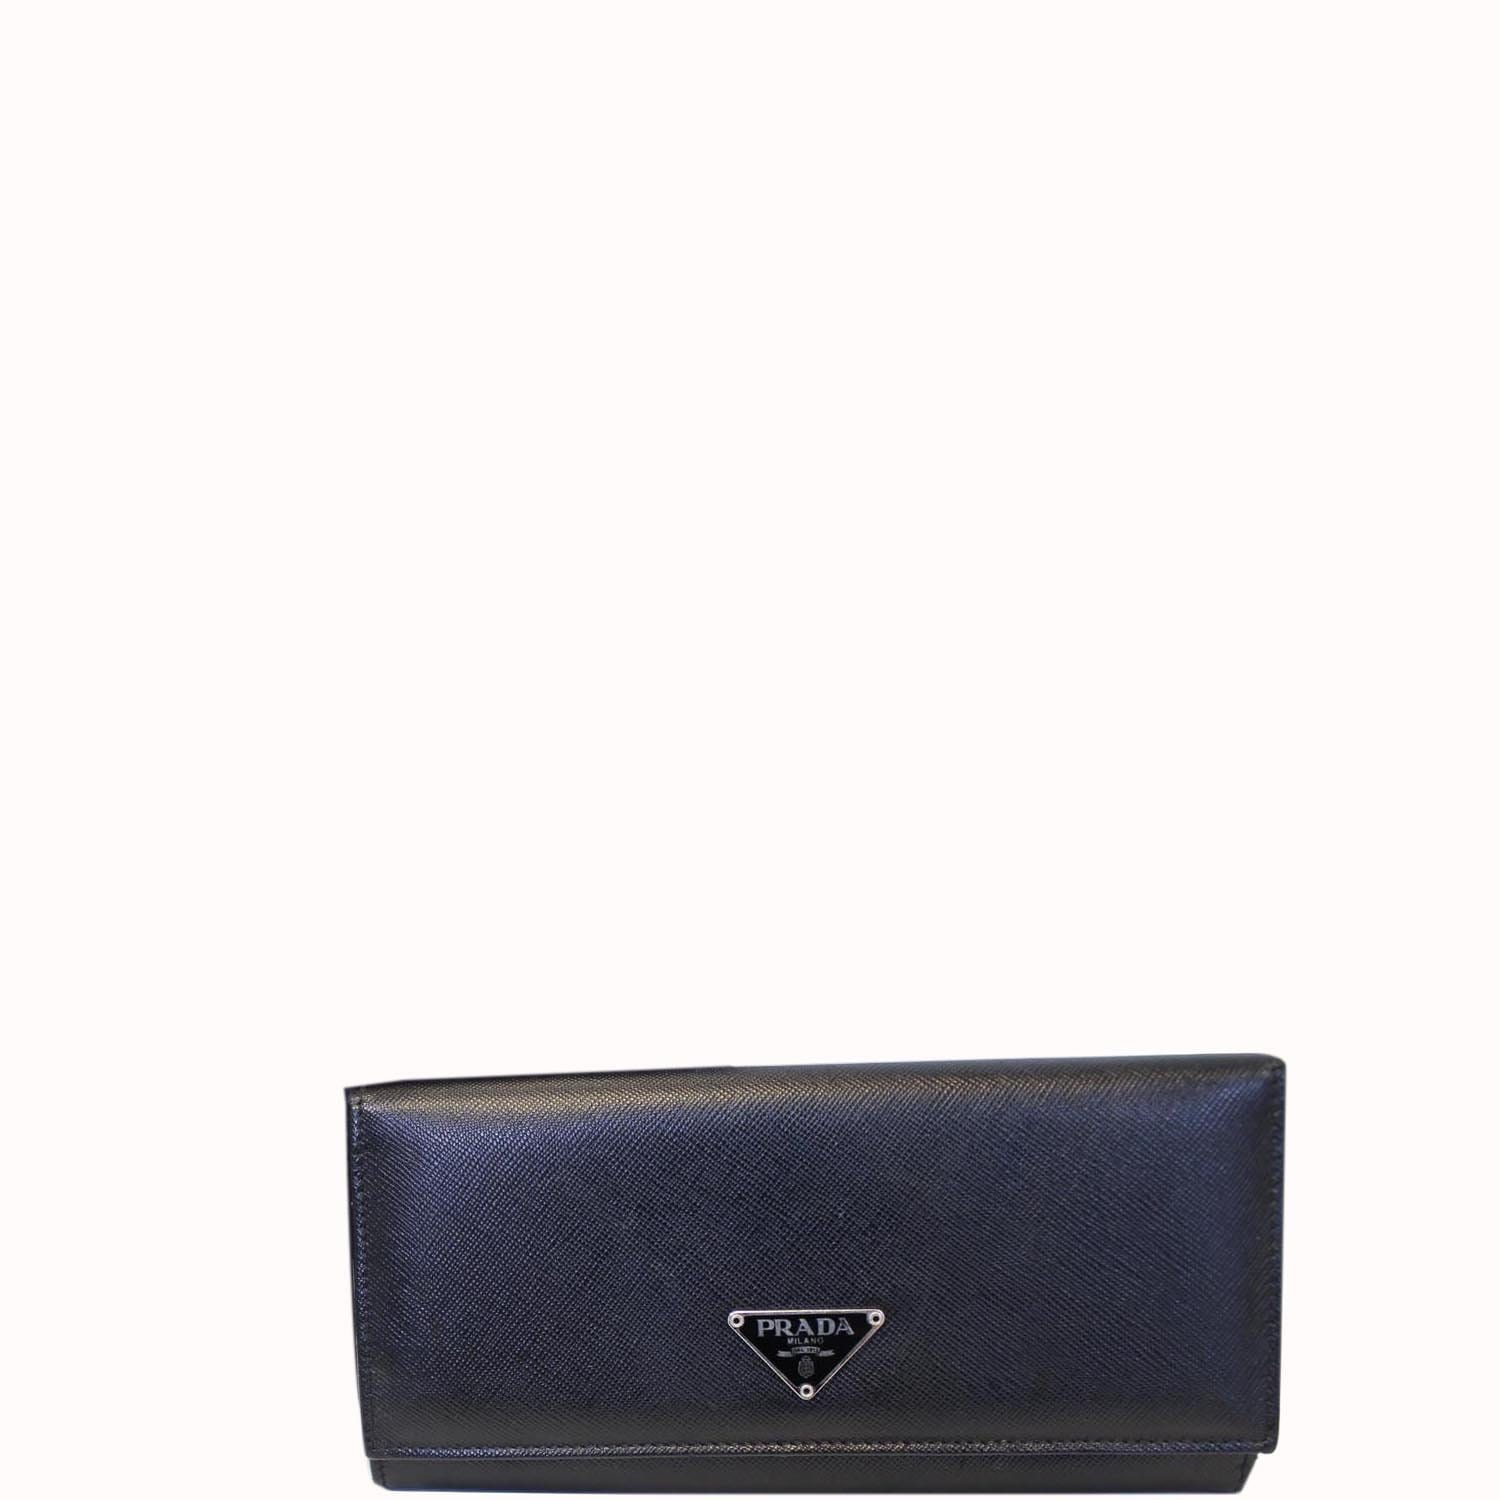 Prada Saffiano Wallet - Prada Wallet Continental Leather